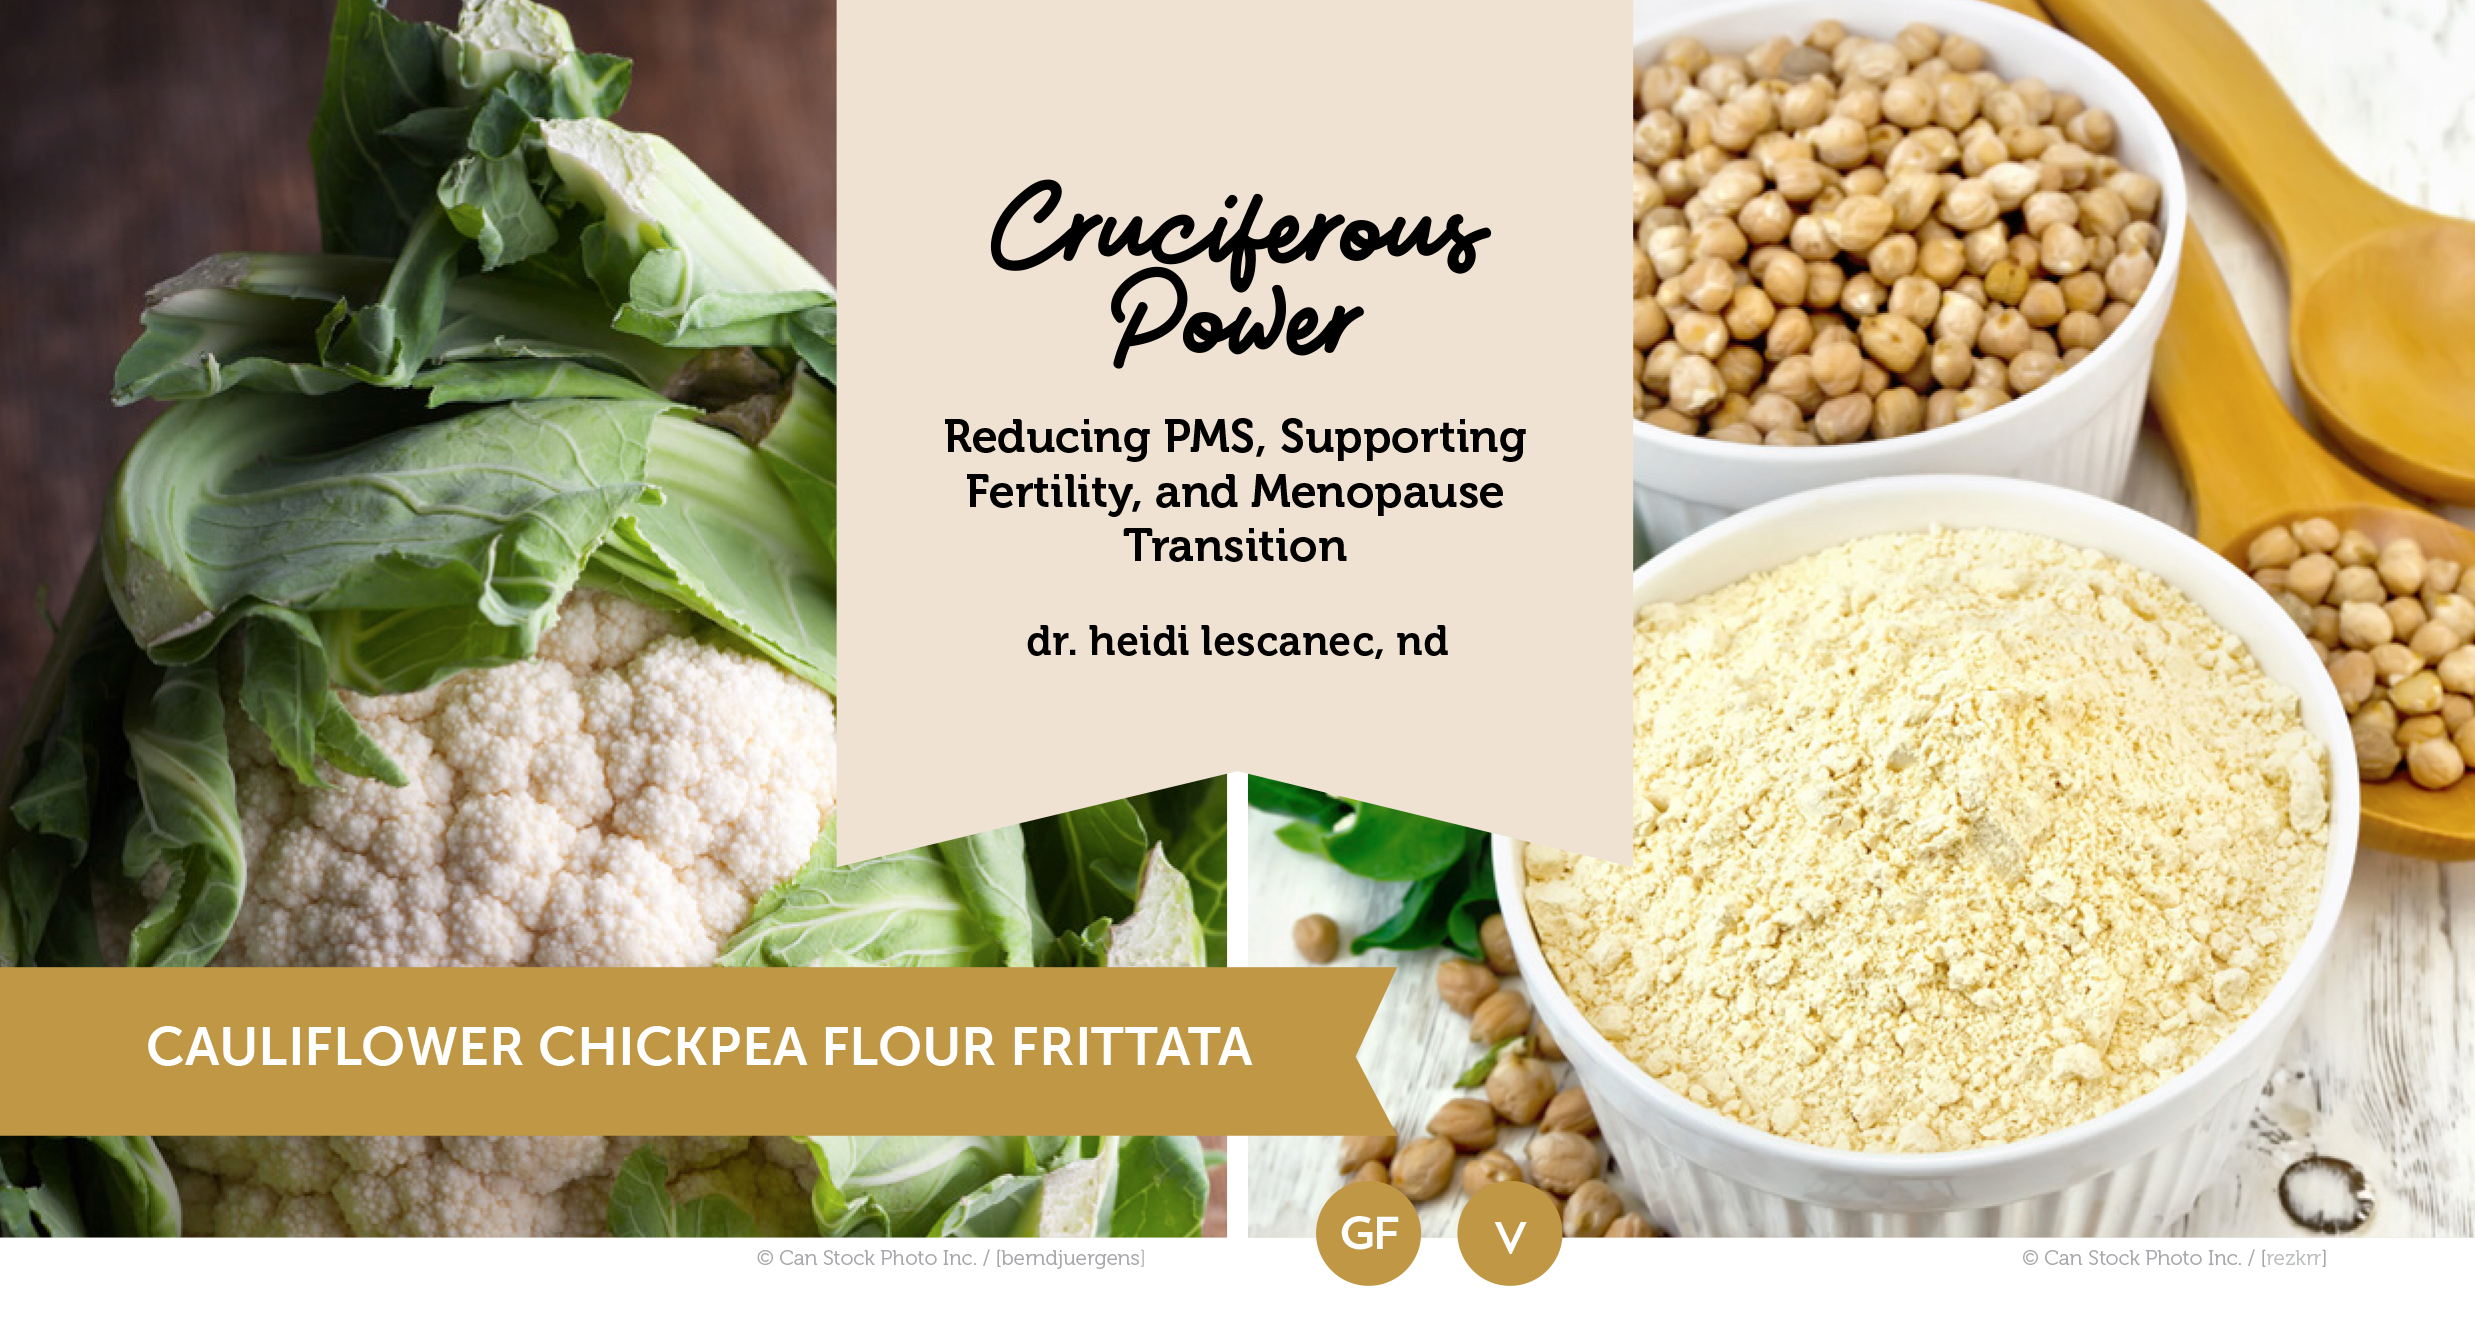 Cruciferous Power Cauliflower Chickpea Flour Frittata (Vegan & Gluten- Free) recipe